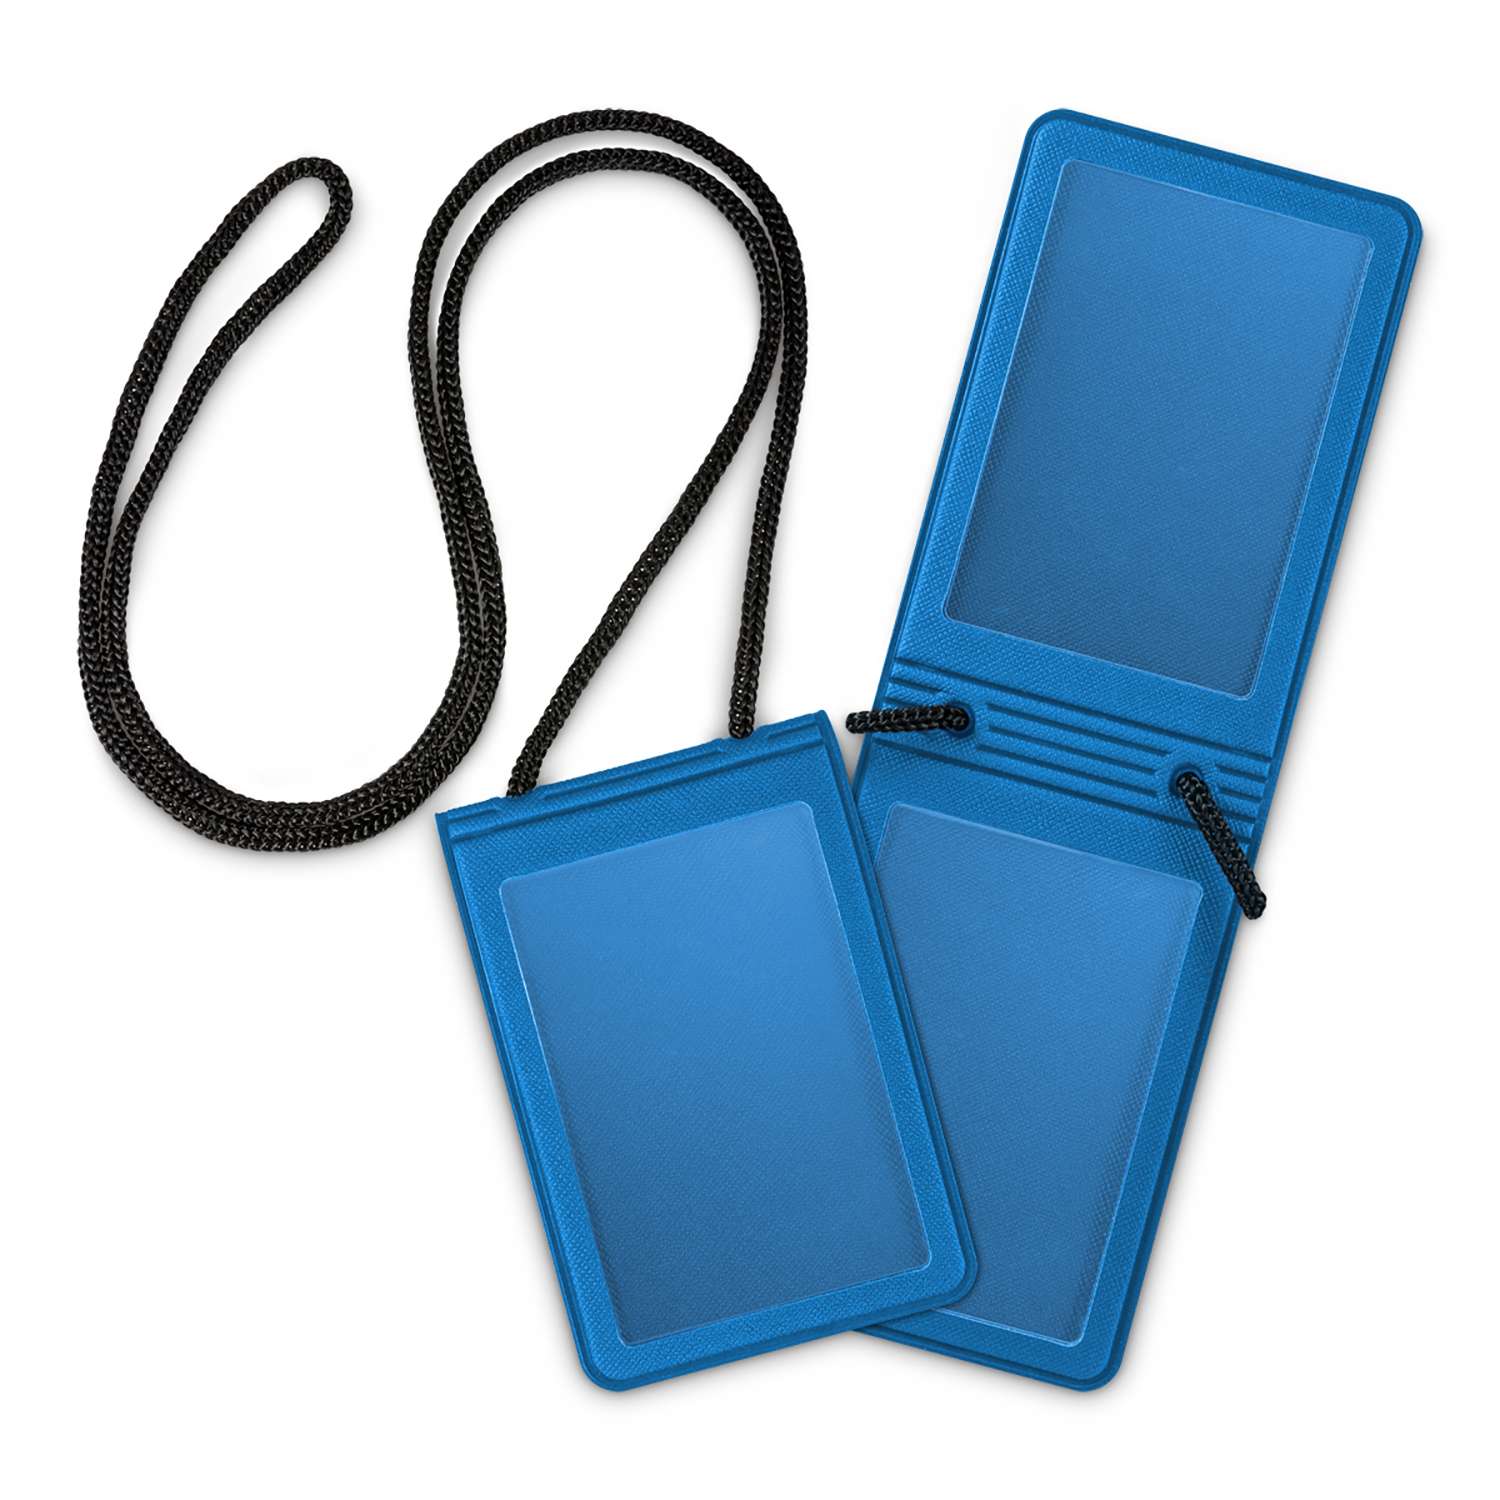 Держатель для бейджа Flexpocket с двойным карманом для карты или пропуска - фото 2